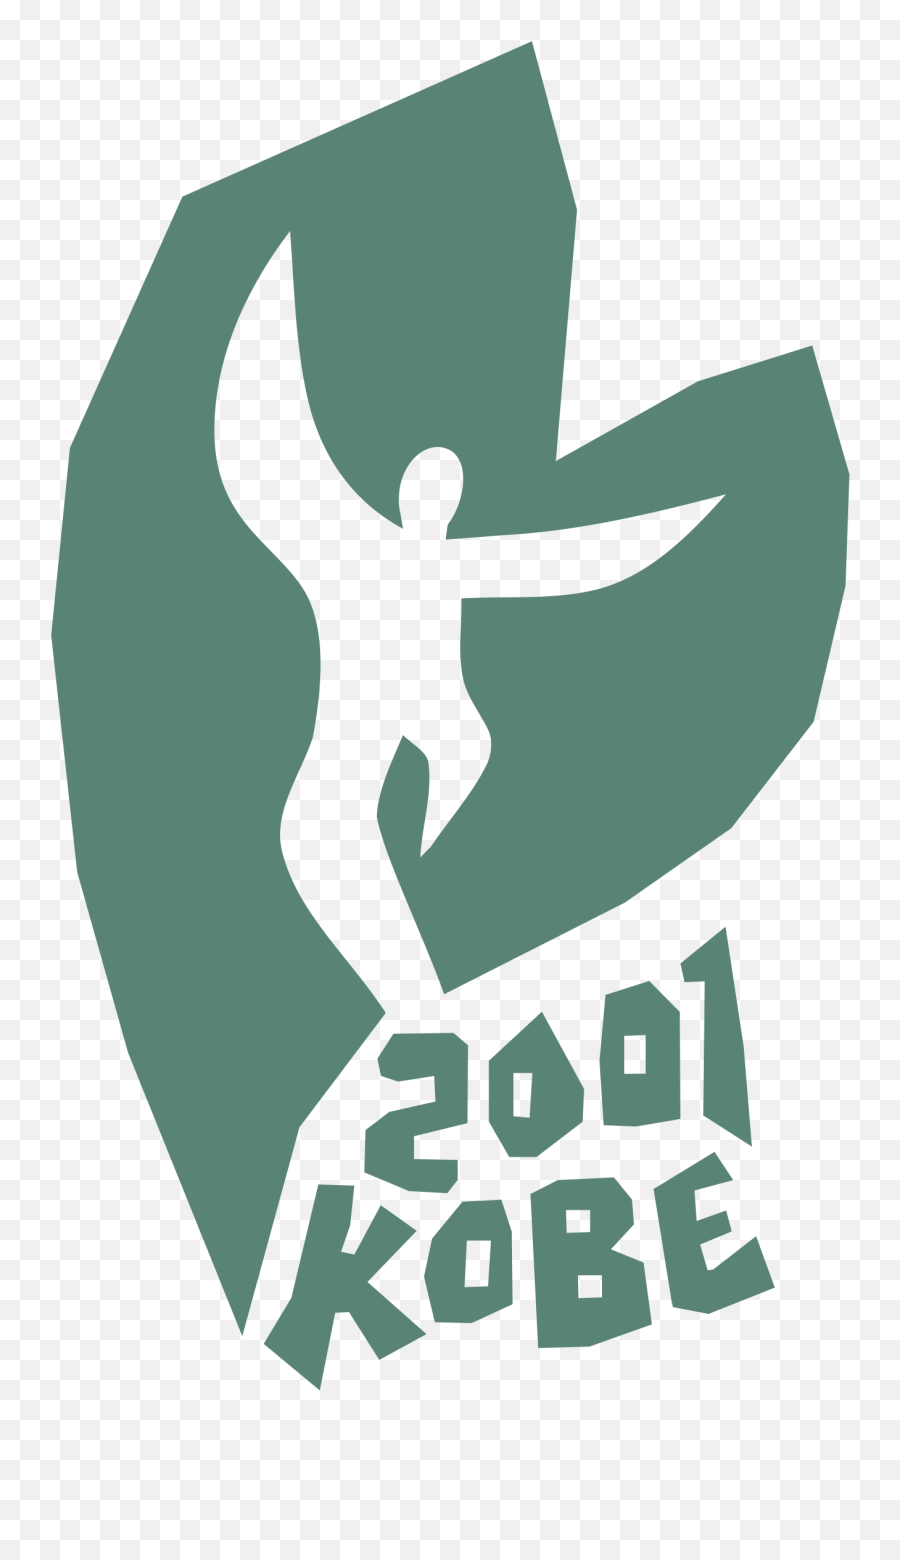 2001 Kobe Logo Png Transparent U0026 Svg Vector - Freebie Supply Language Emoji,Kobe Nba Logo